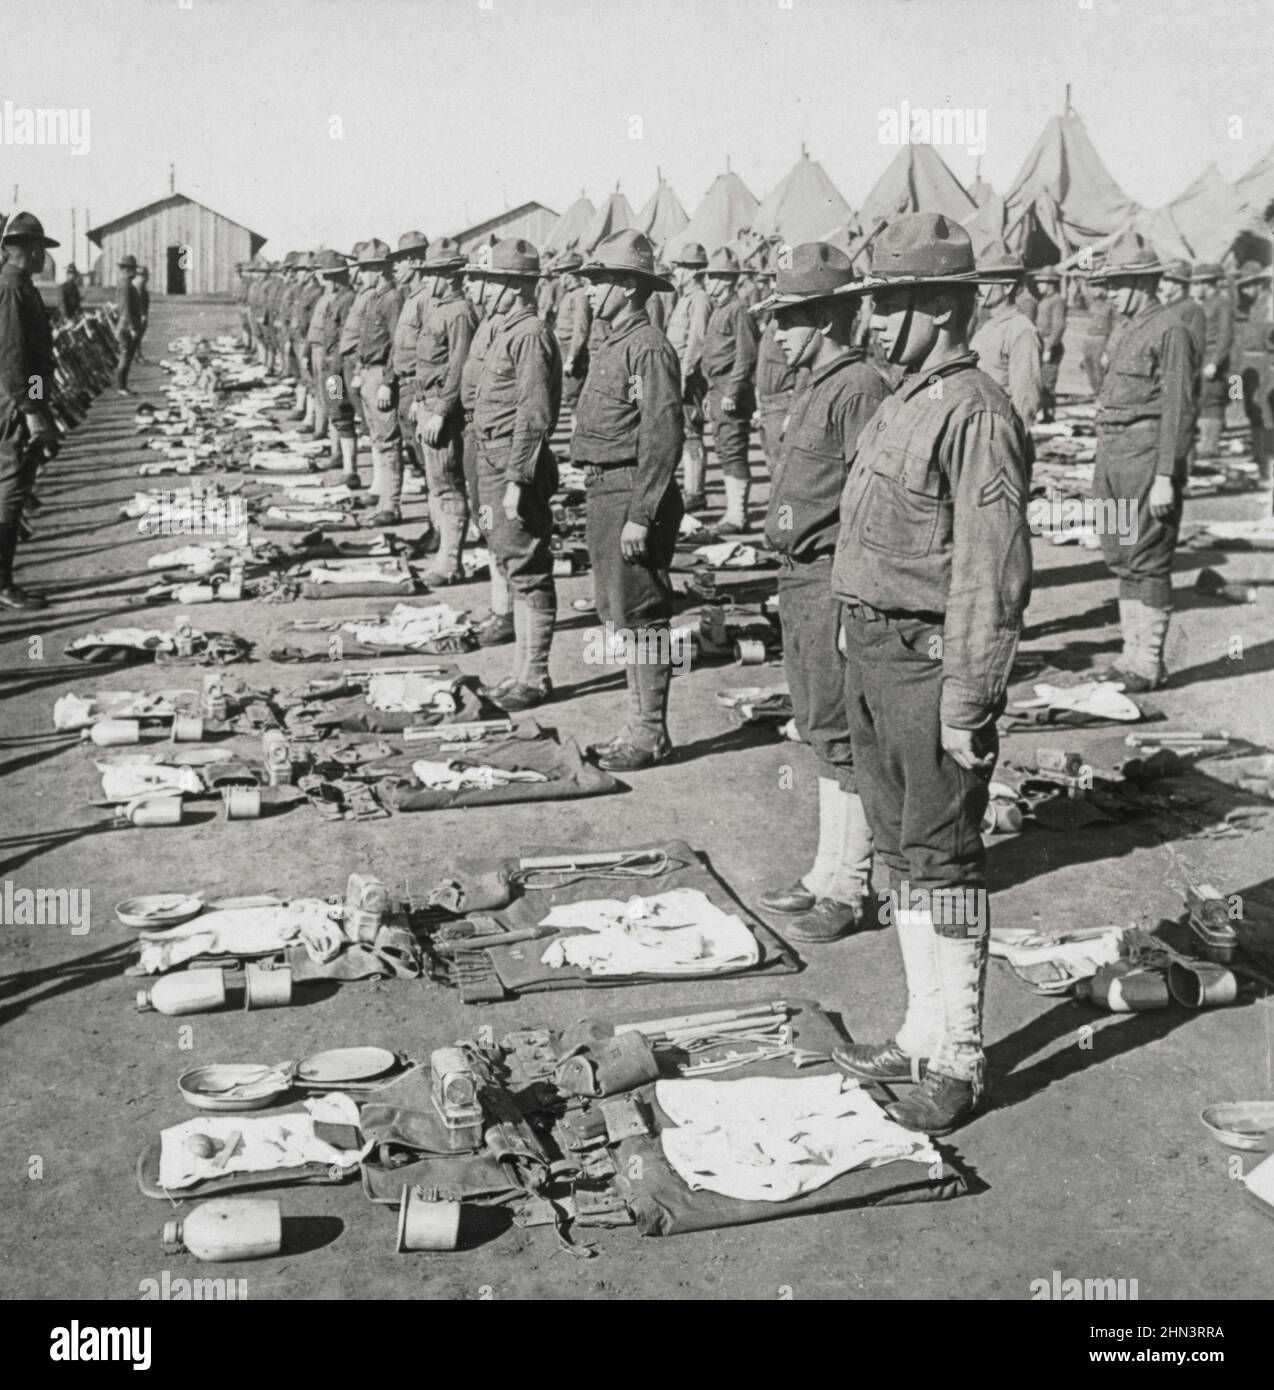 Foto vintage de la Primera Guerra Mundial 1914-1918. Pack de inspección del regimiento de infantería americano 139th, campamento del ejército americano. EE.UU Foto de stock